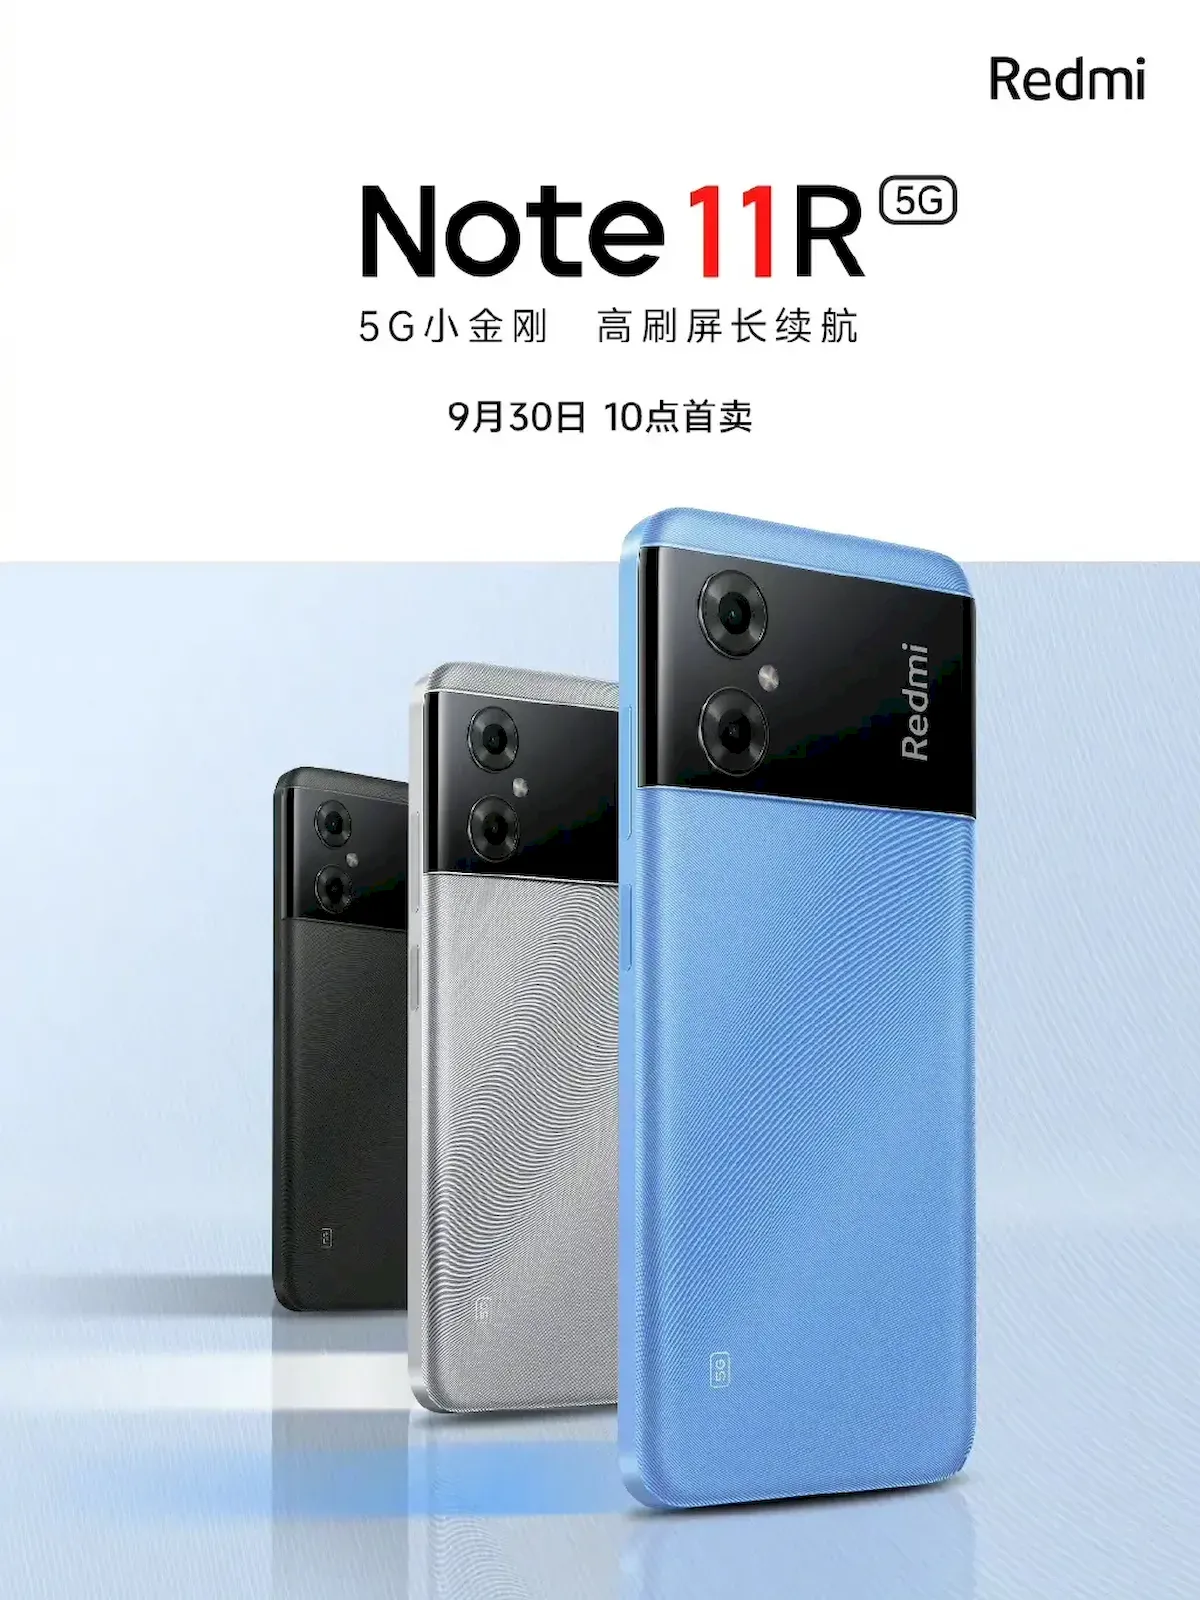 Redmi anunciou oficialmente o Redmi Note 11R